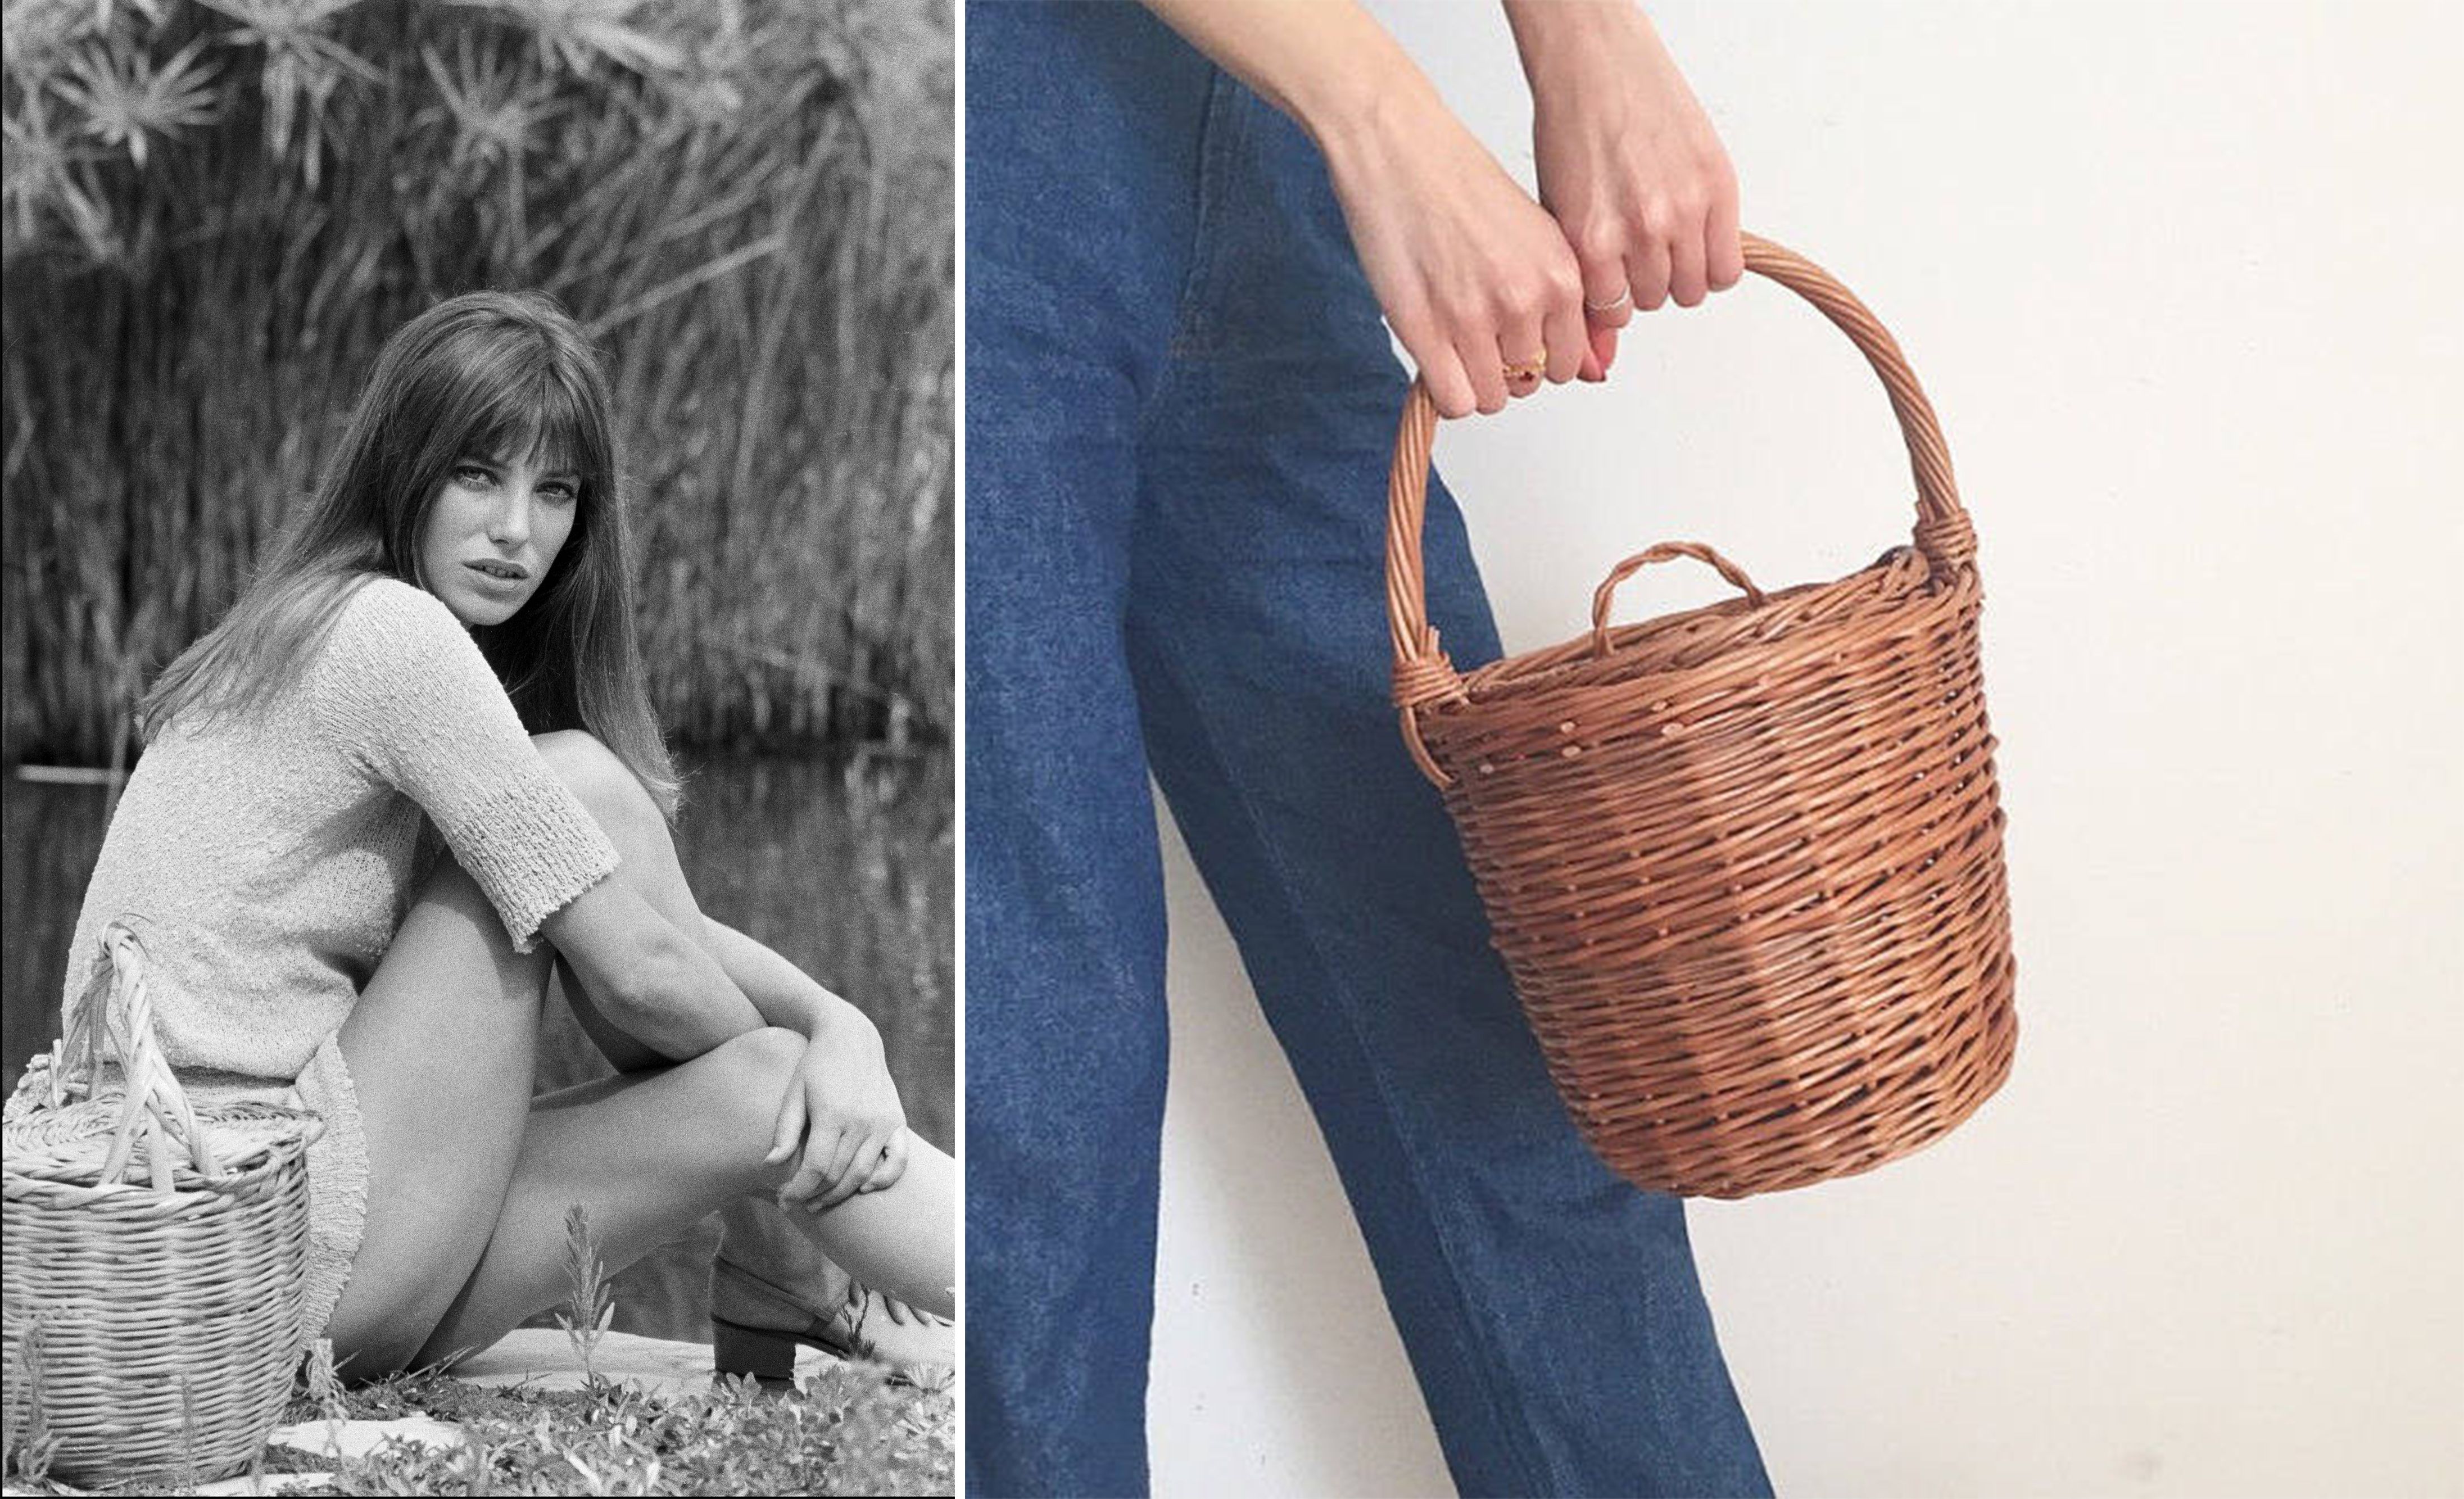 Jane Birkin Style Wicker Basket Bags